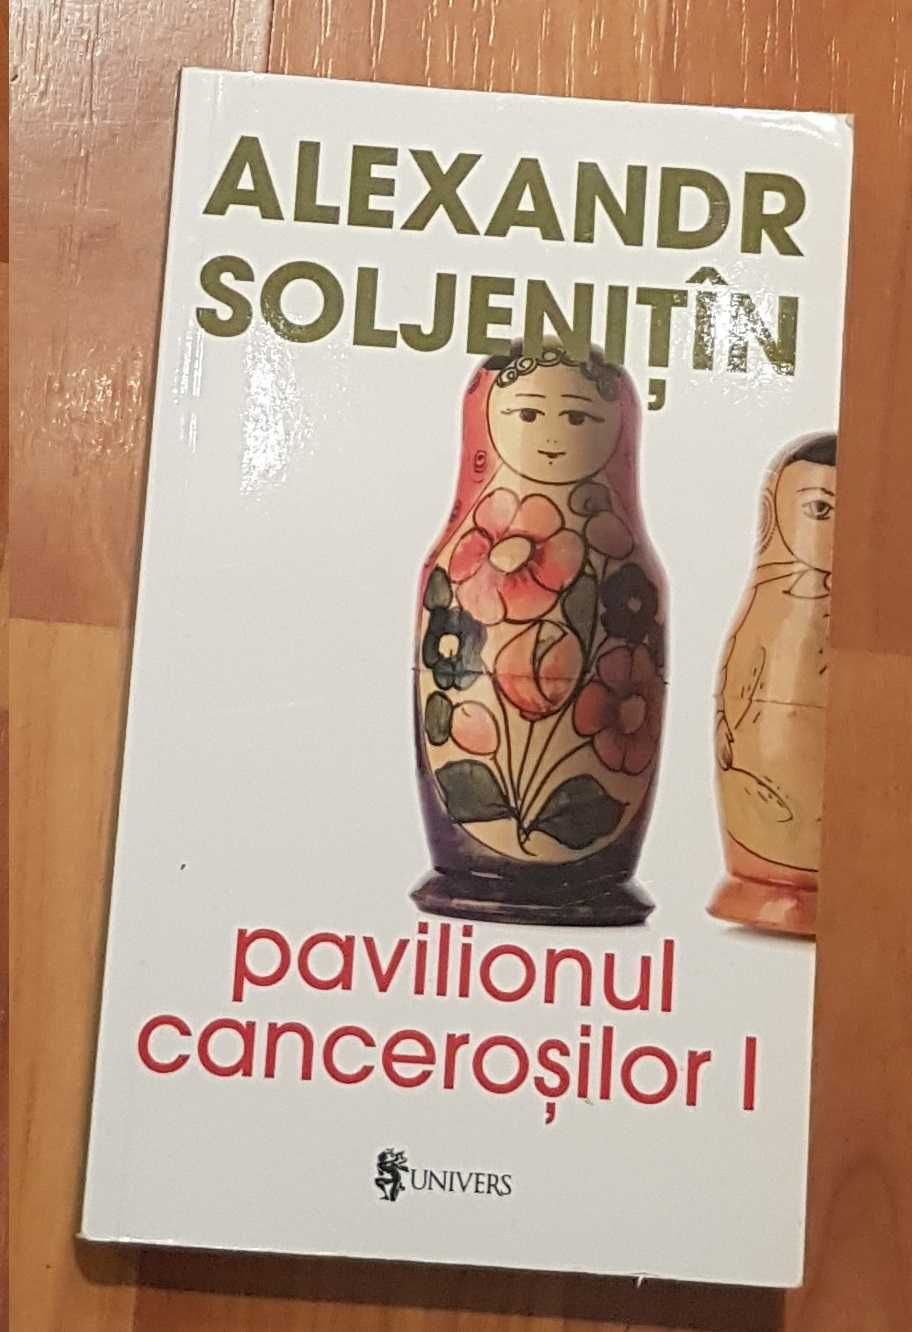 Pavilionul cancerosilor de Alexandr Soljenitin (2 vol.)